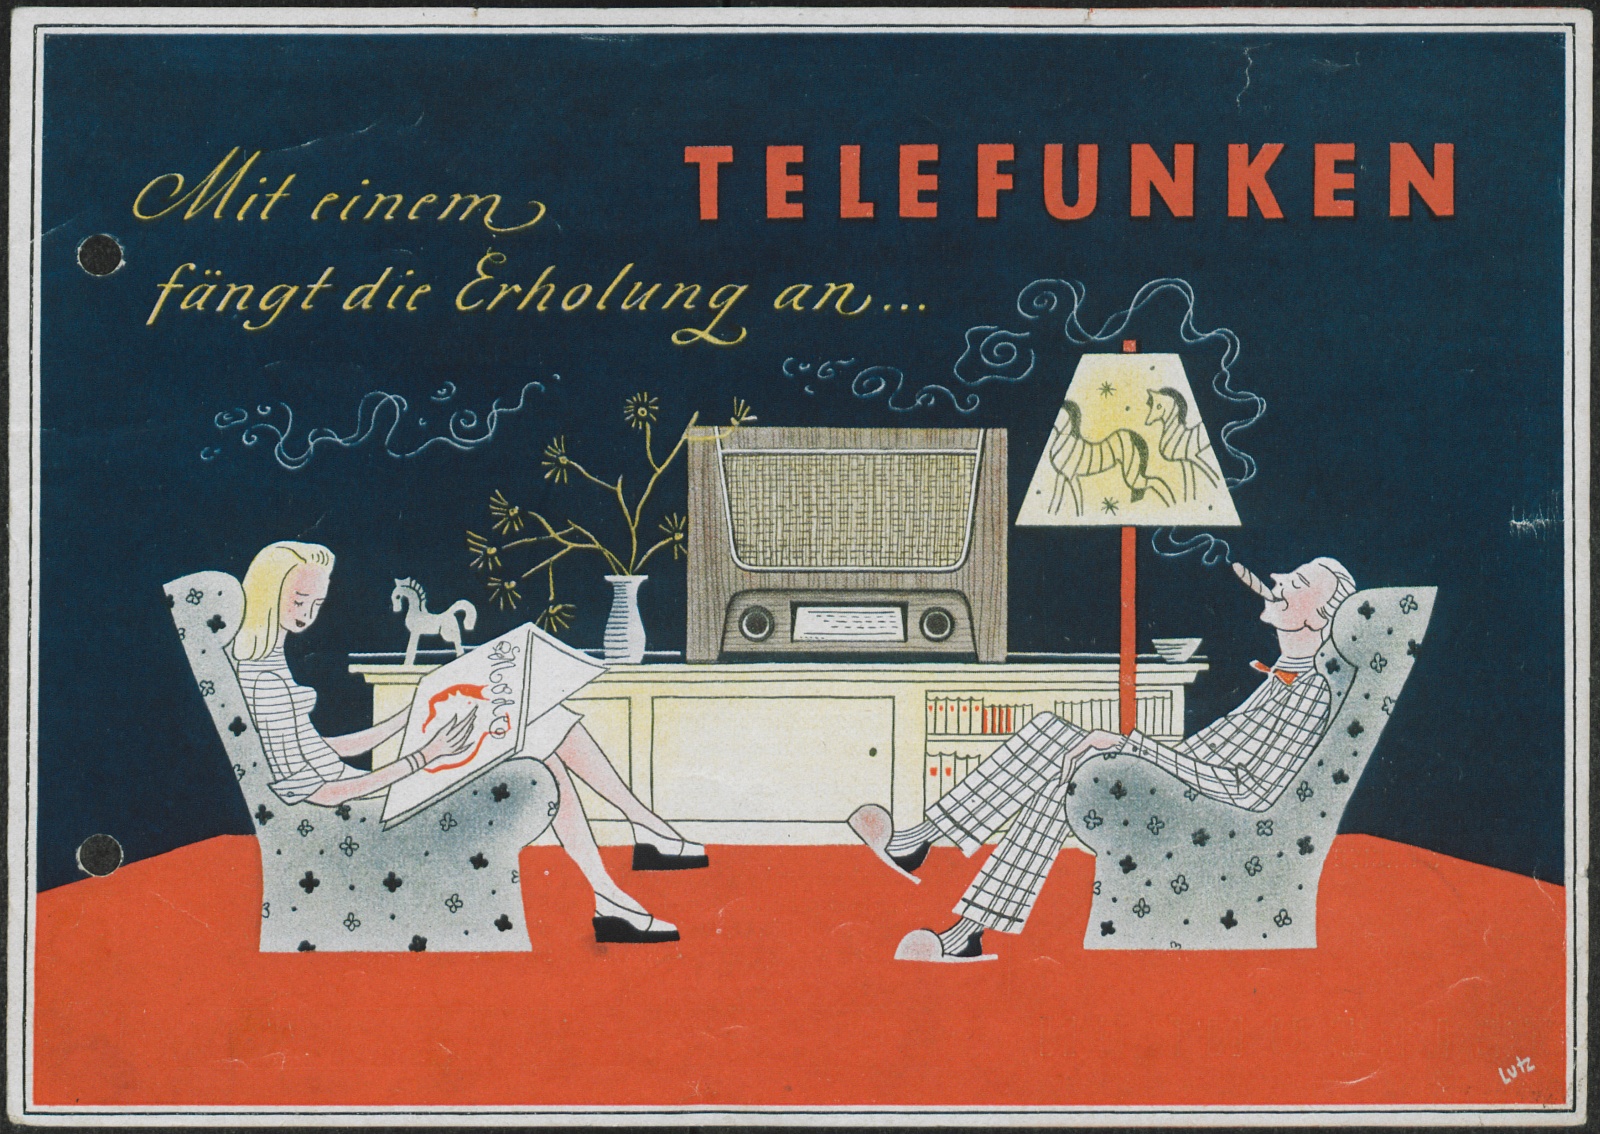 Bedienungsanleitung: Mit einem Telefunken fängt die Erholung an... (Stiftung Deutsches Technikmuseum Berlin CC0)